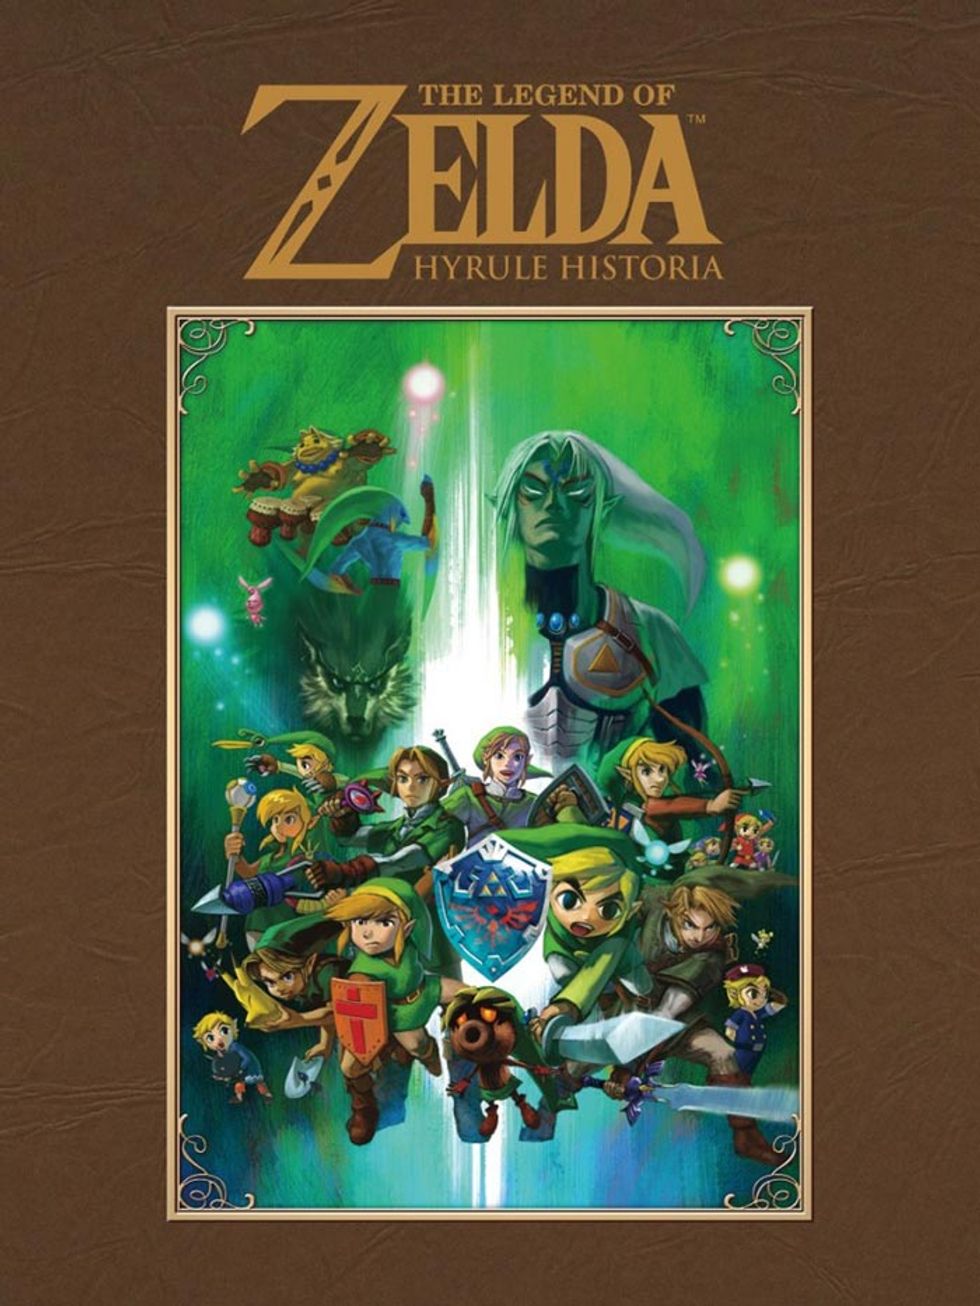 Annunciata negli USA l’uscita di “The Legend of Zelda: Hyrule Historia”